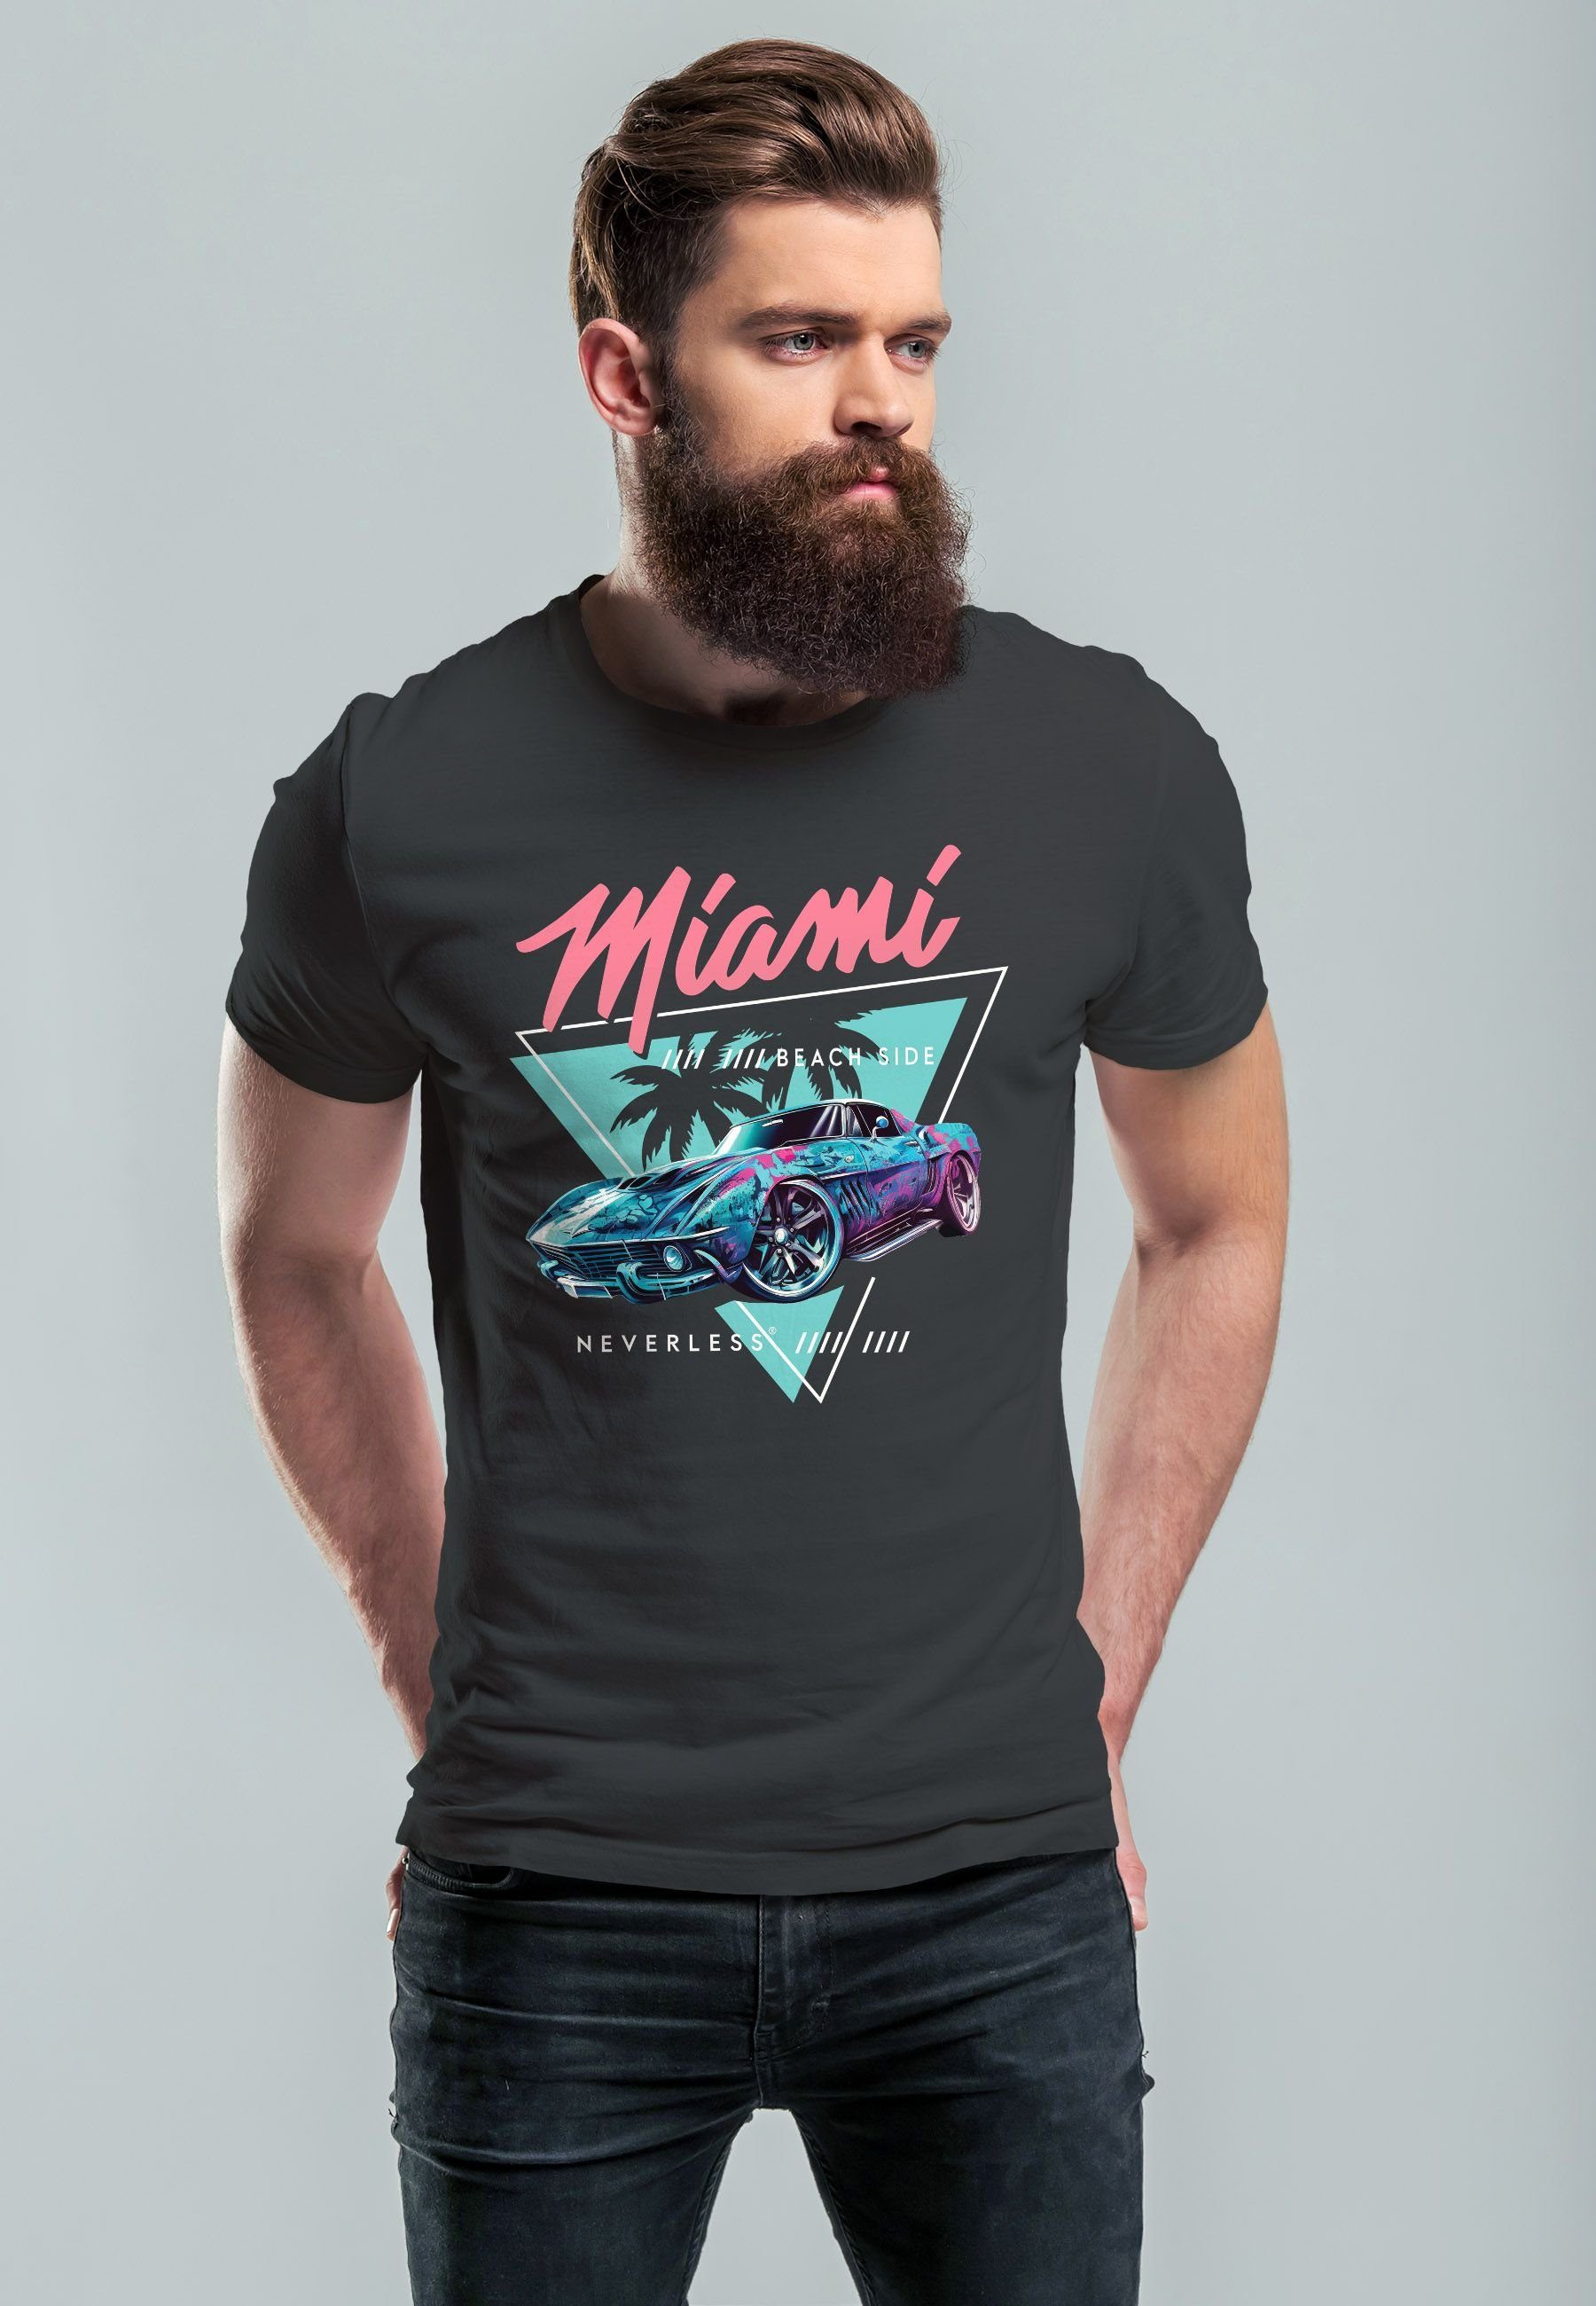 Neverless Print-Shirt Miami T-Shirt Surfing Automobil Motiv Beach Print USA dunkelgrau Herren mit Bedruckt Retro